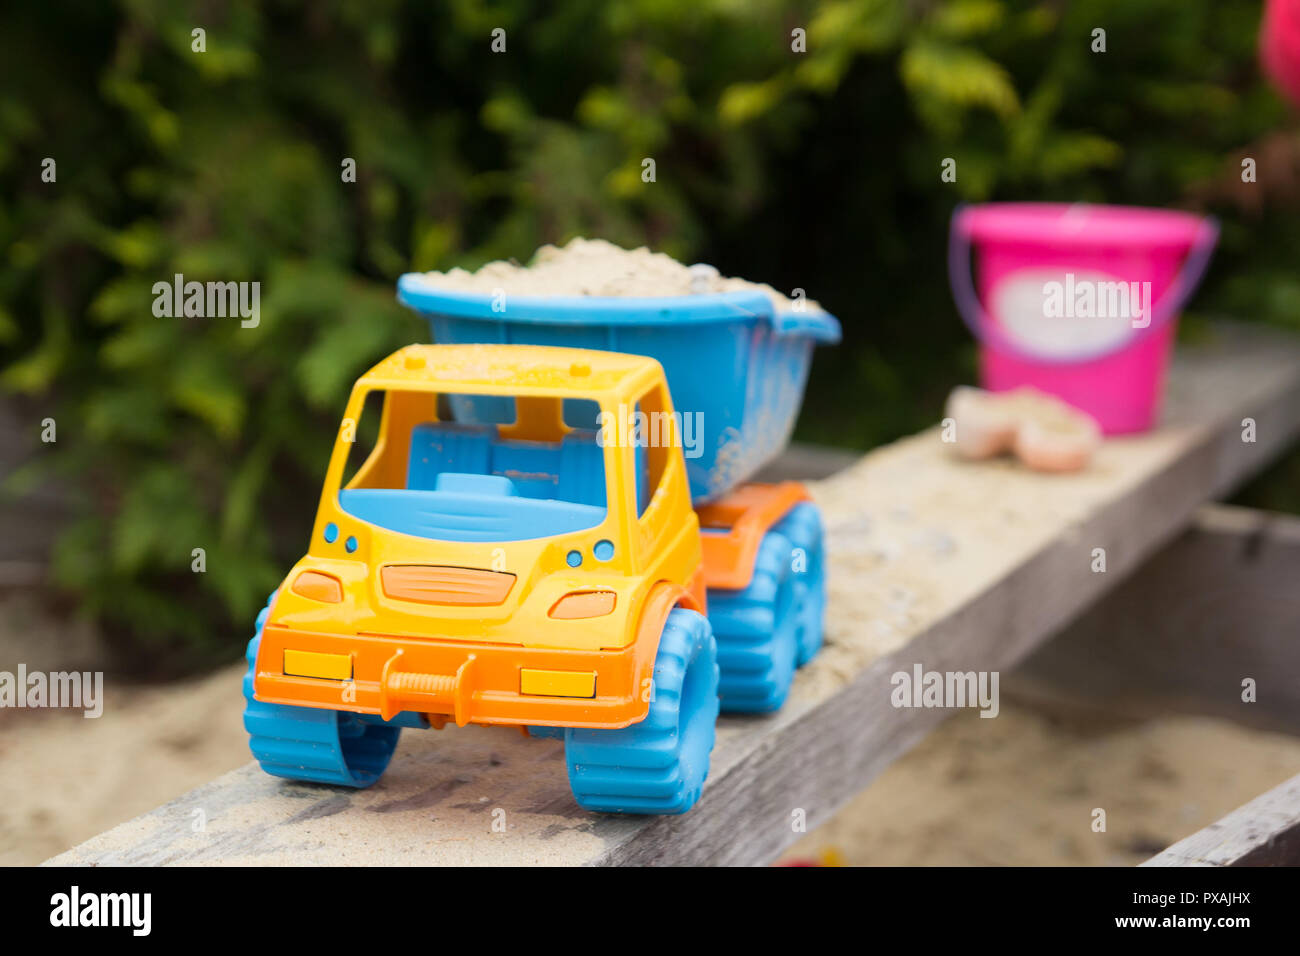 children truck toy Stock Photo